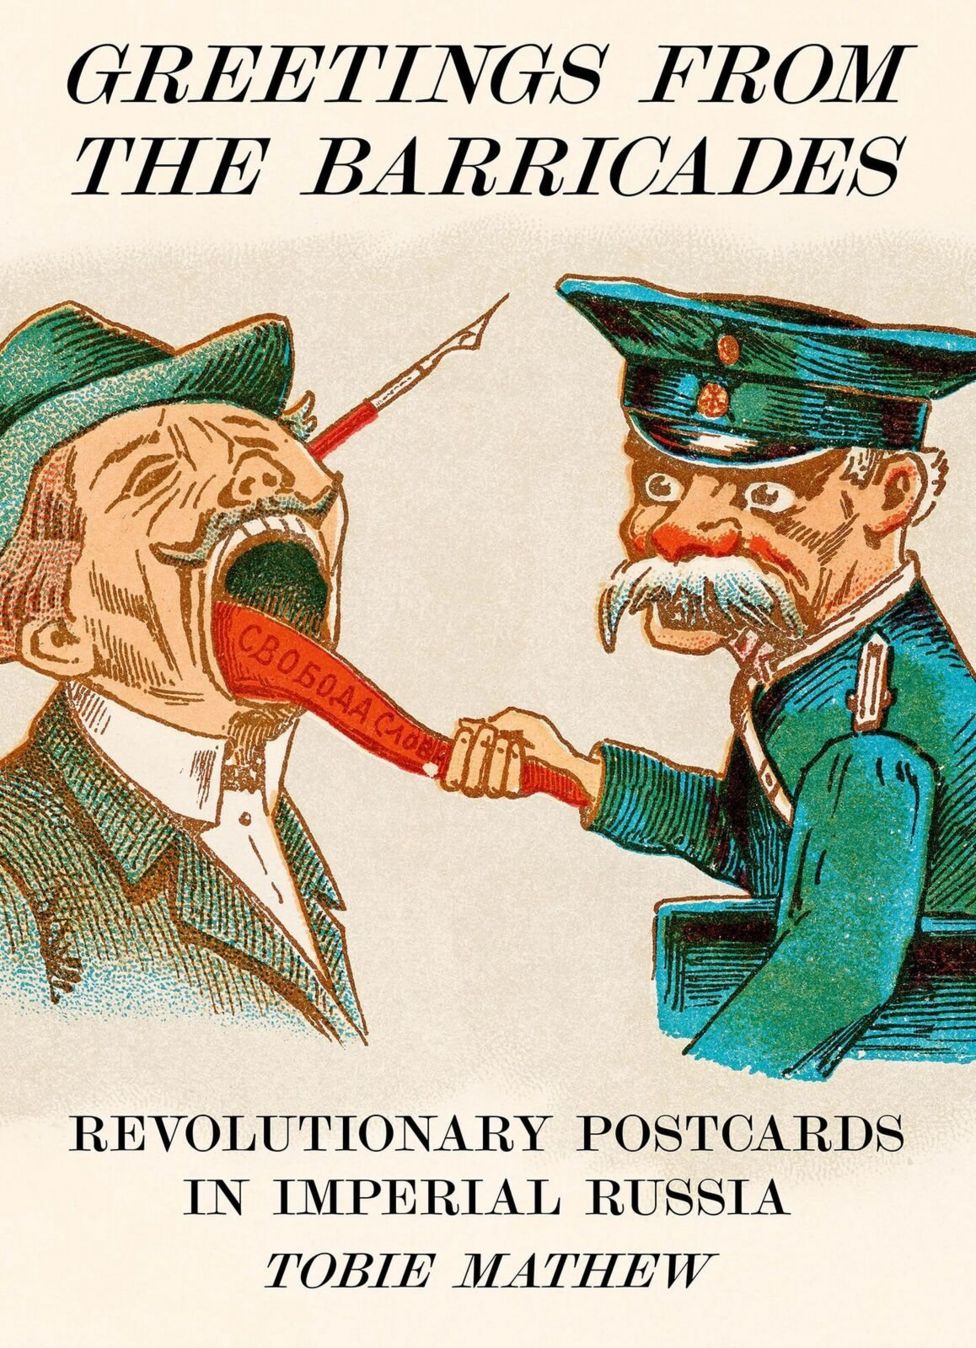 Обложка книги Тоби Мэтью "Привет с баррикад. Революционные открытки в императорской России"